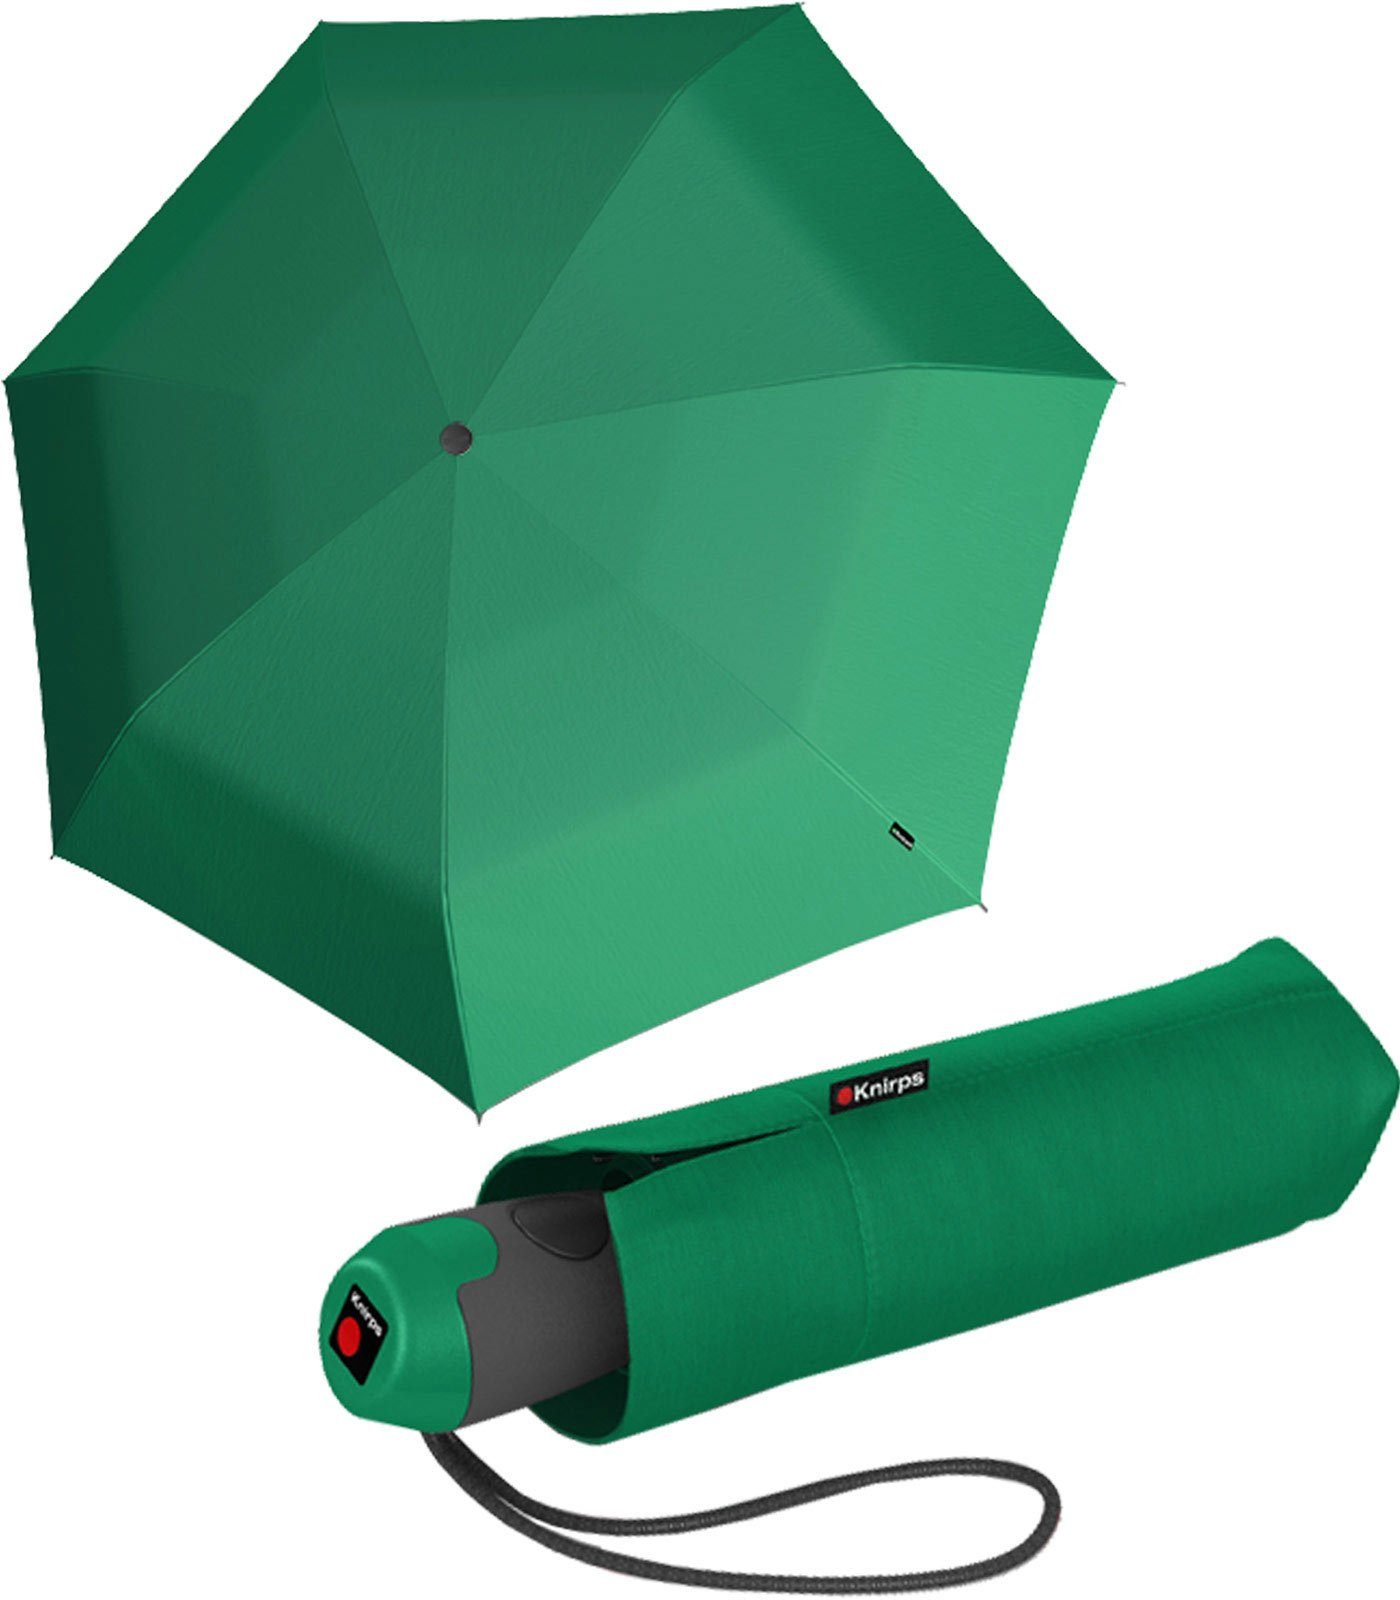 Handtasche die Auf-Zu-Automatik, kleiner, E.100 für green Automatikschirm Knirps® Mini-Schirm kompakter mit Taschenregenschirm